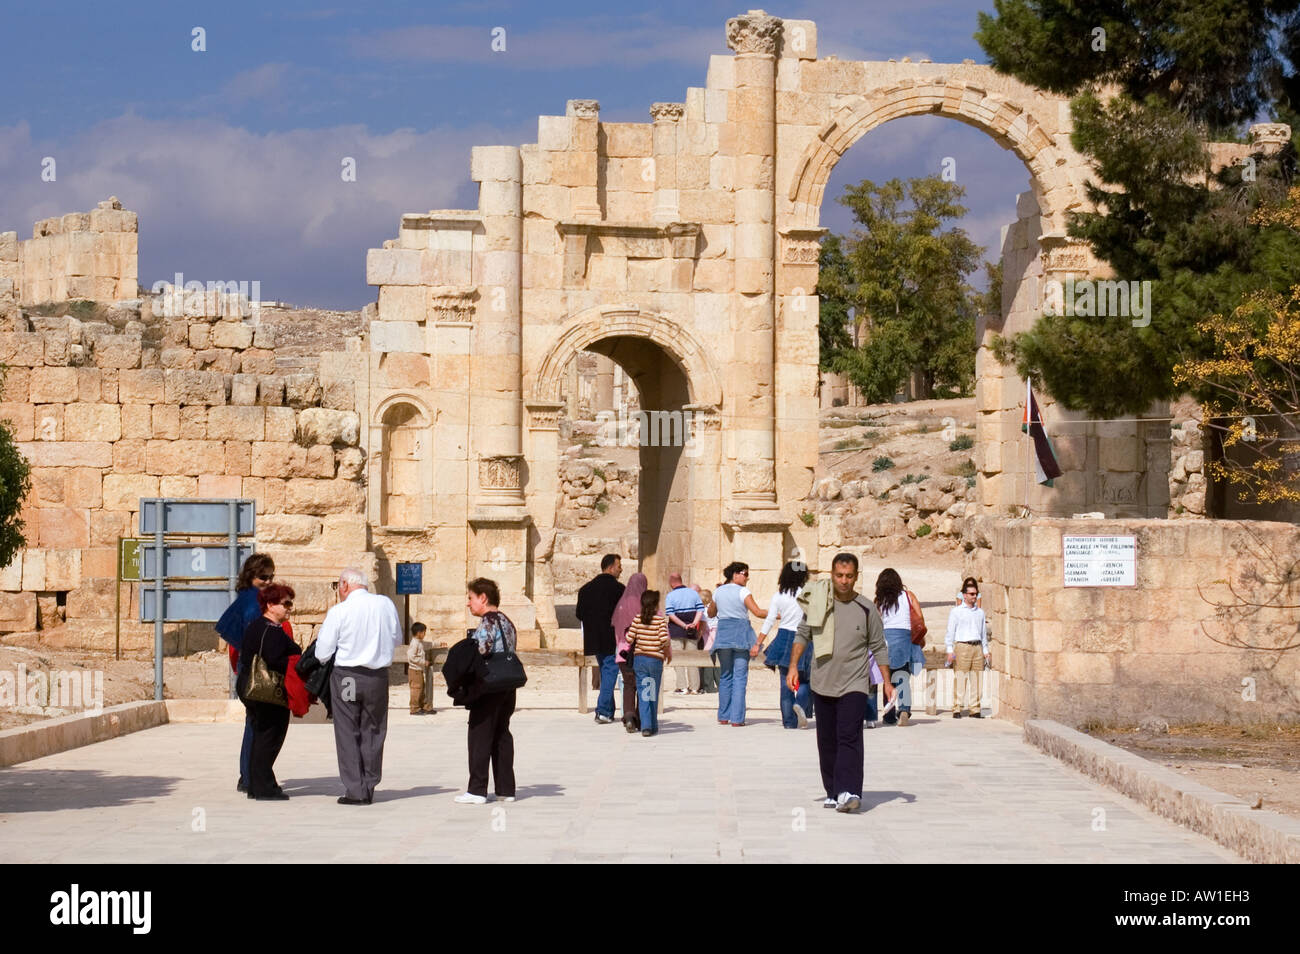 Jordania Jerash, Gerasa arco triunfal del emperador Adriano, construido en AD129 Foto de stock